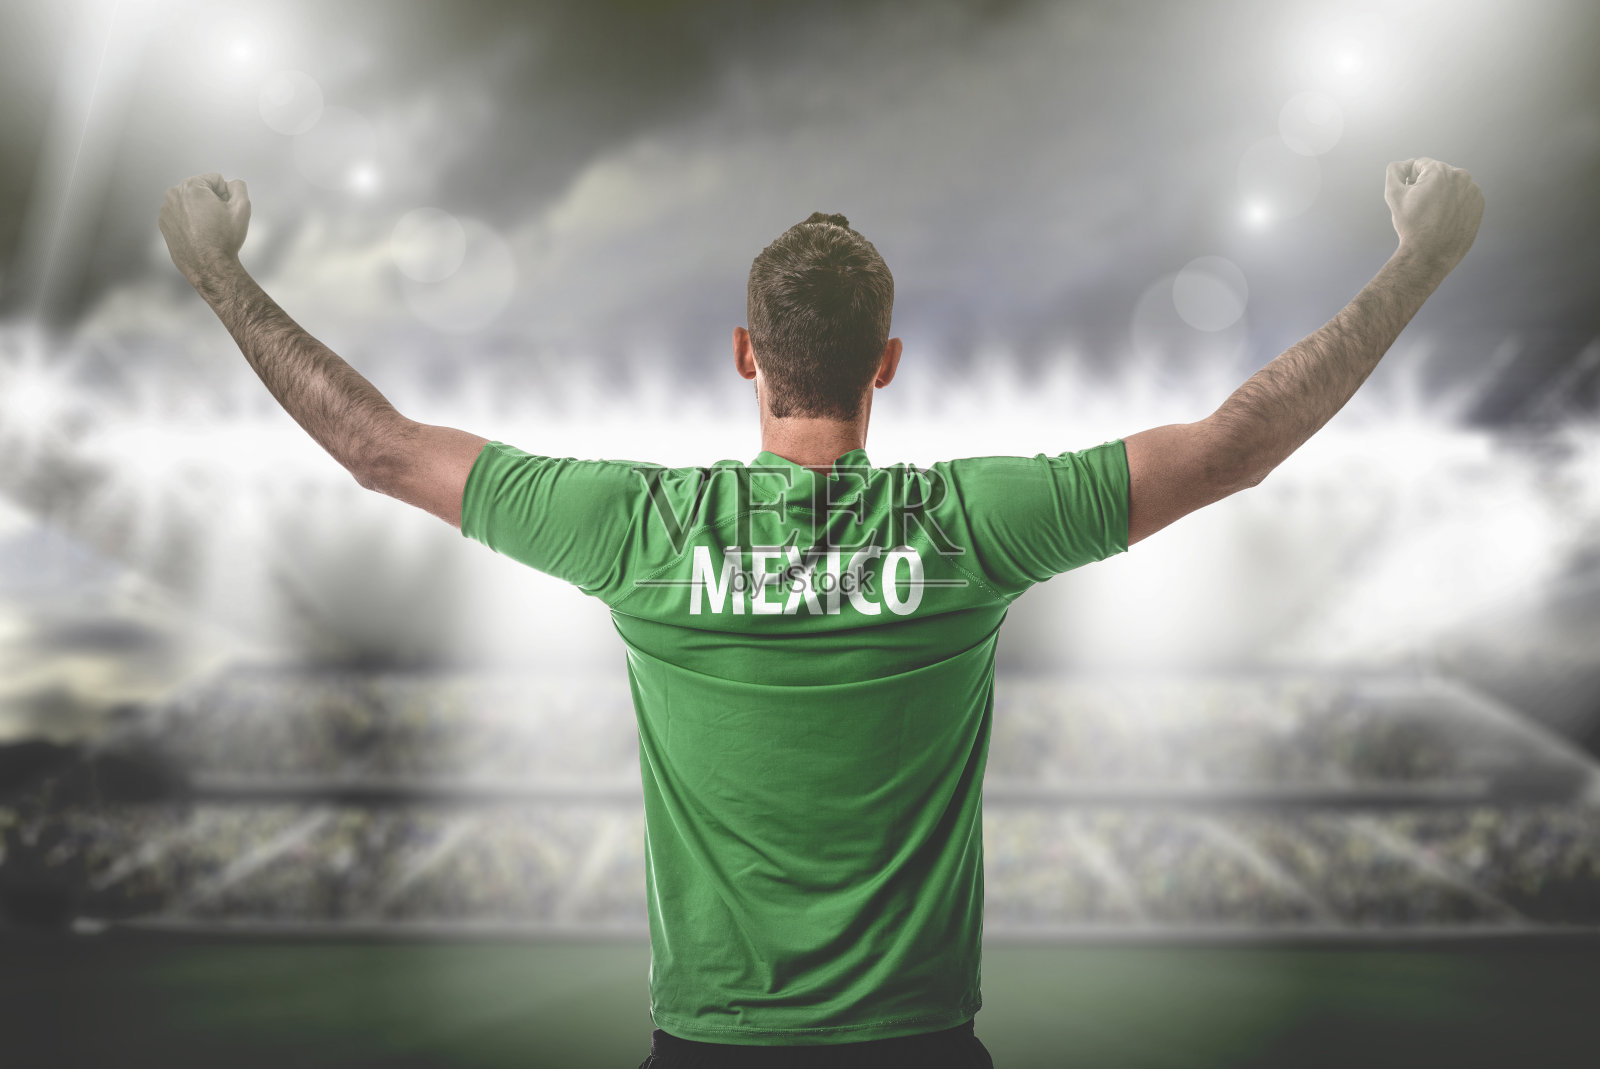 墨西哥球迷/运动员穿着制服庆祝照片摄影图片